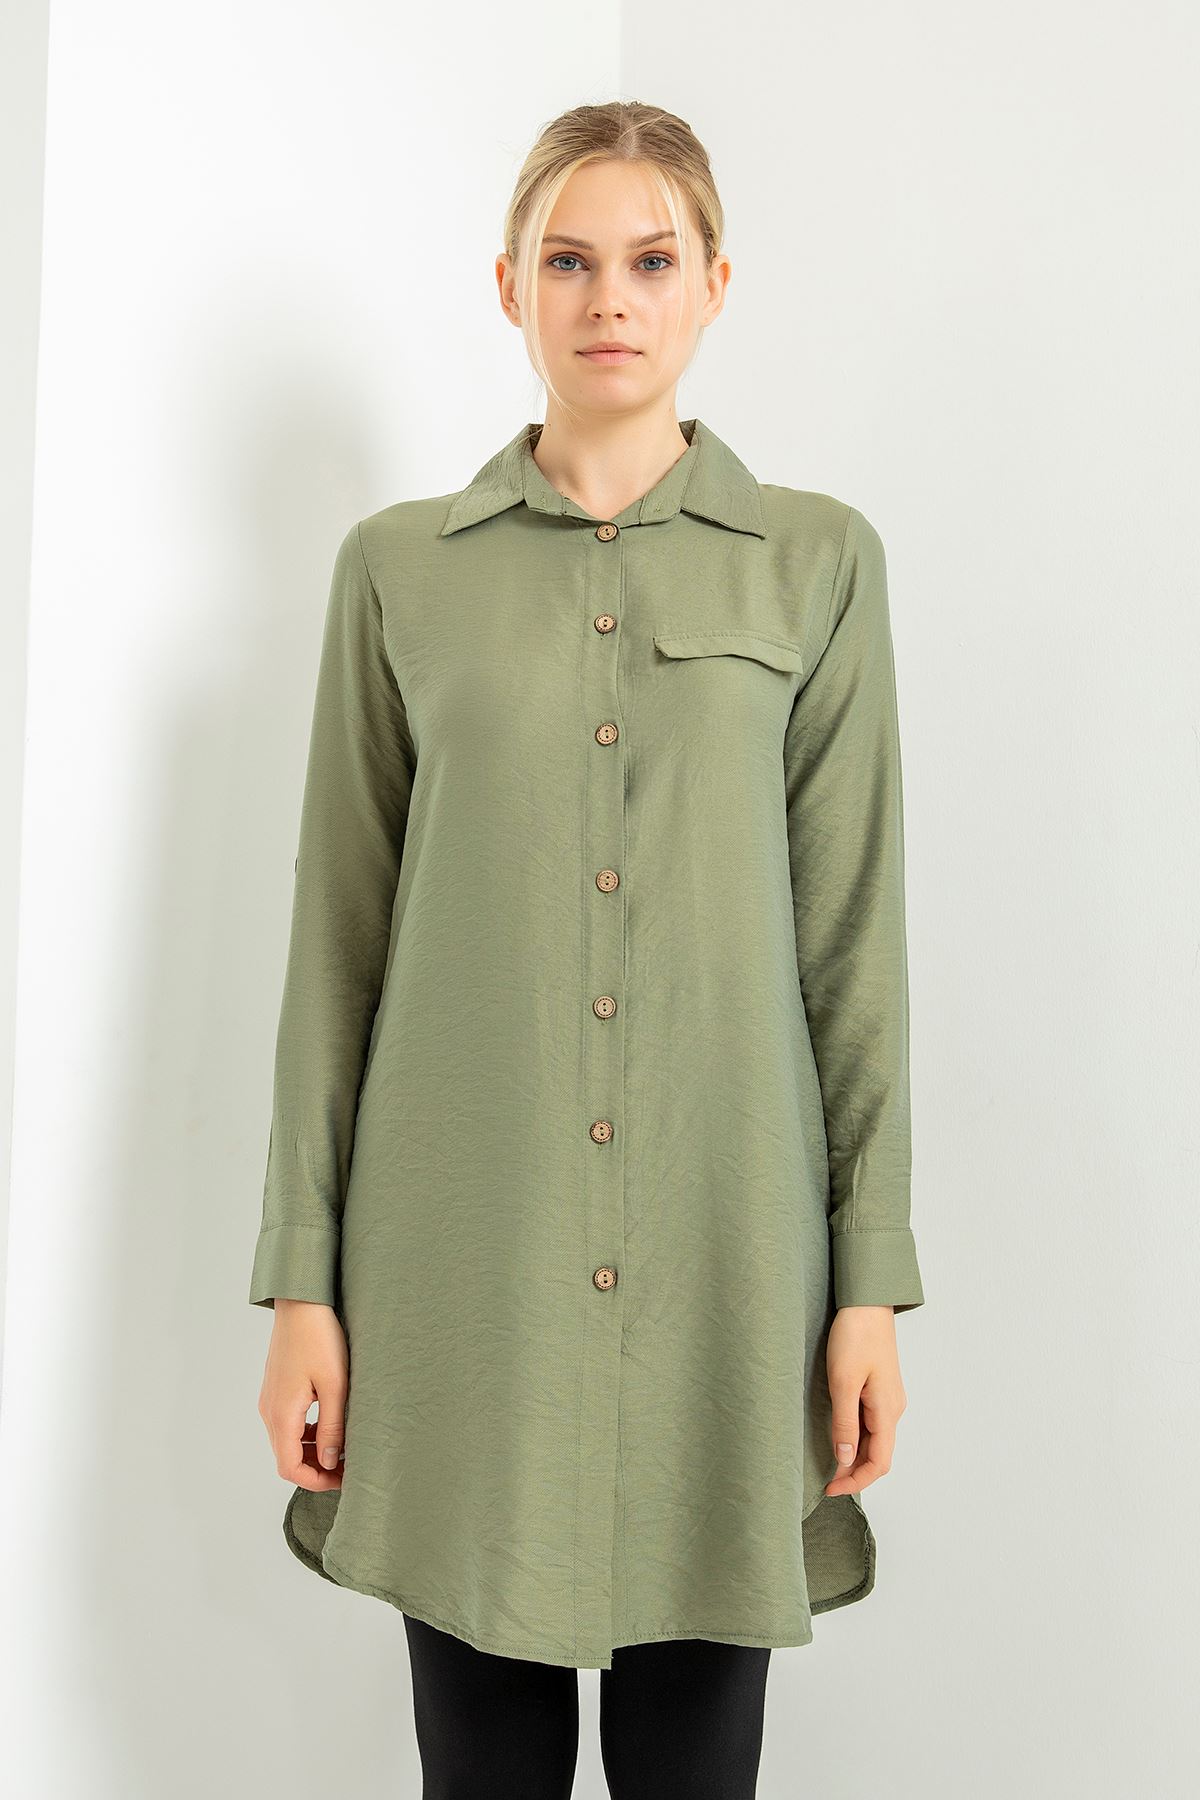 قماش نسيج بودروم عالي الجودة ذراع طويلة طوق القميص تحت الحوض كلاسيك - اخضر غامق